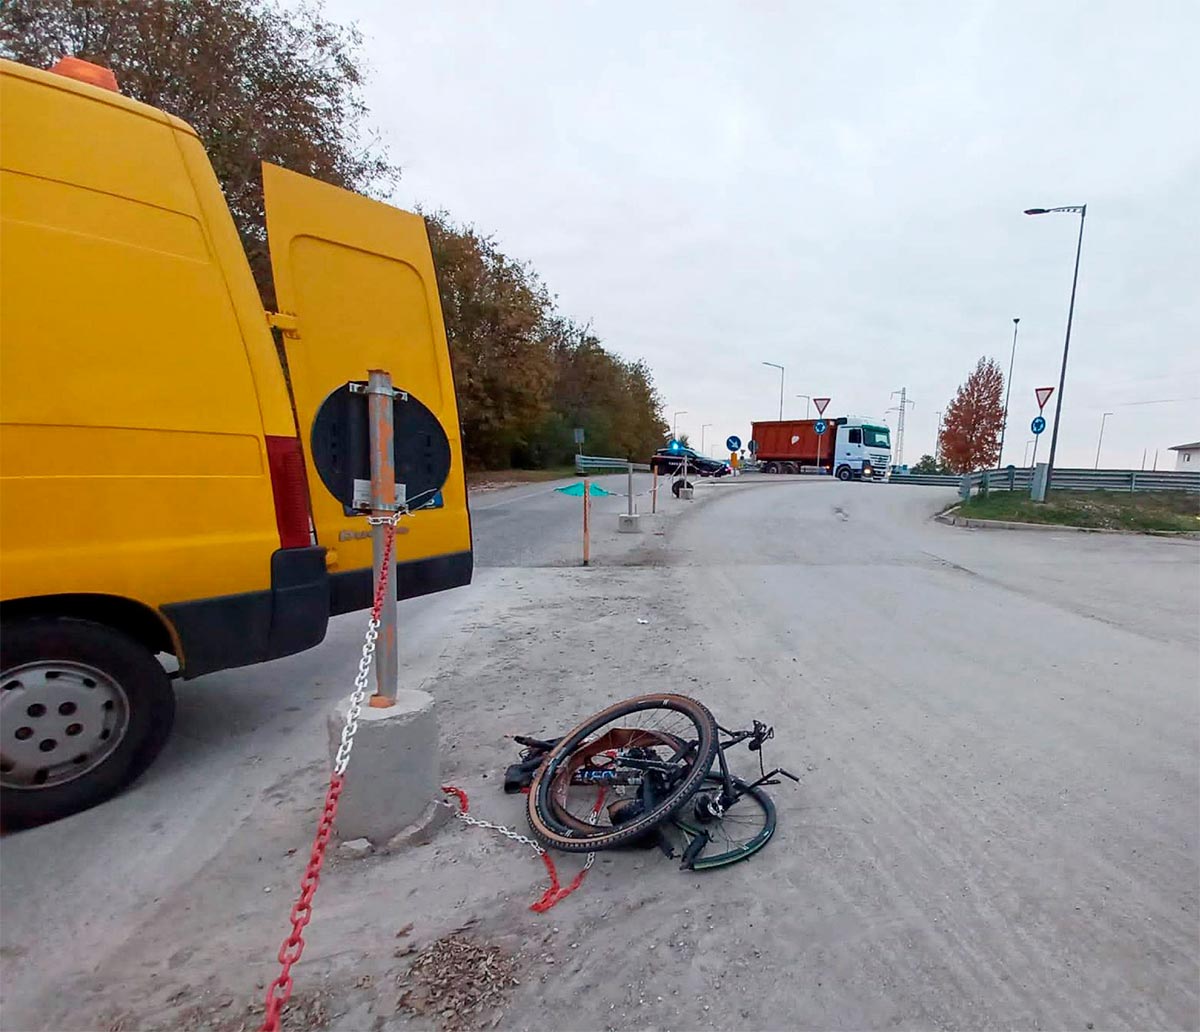 Davide Rebellin, el mítico ciclista italiano recién retirado, muere atropellado por un camión